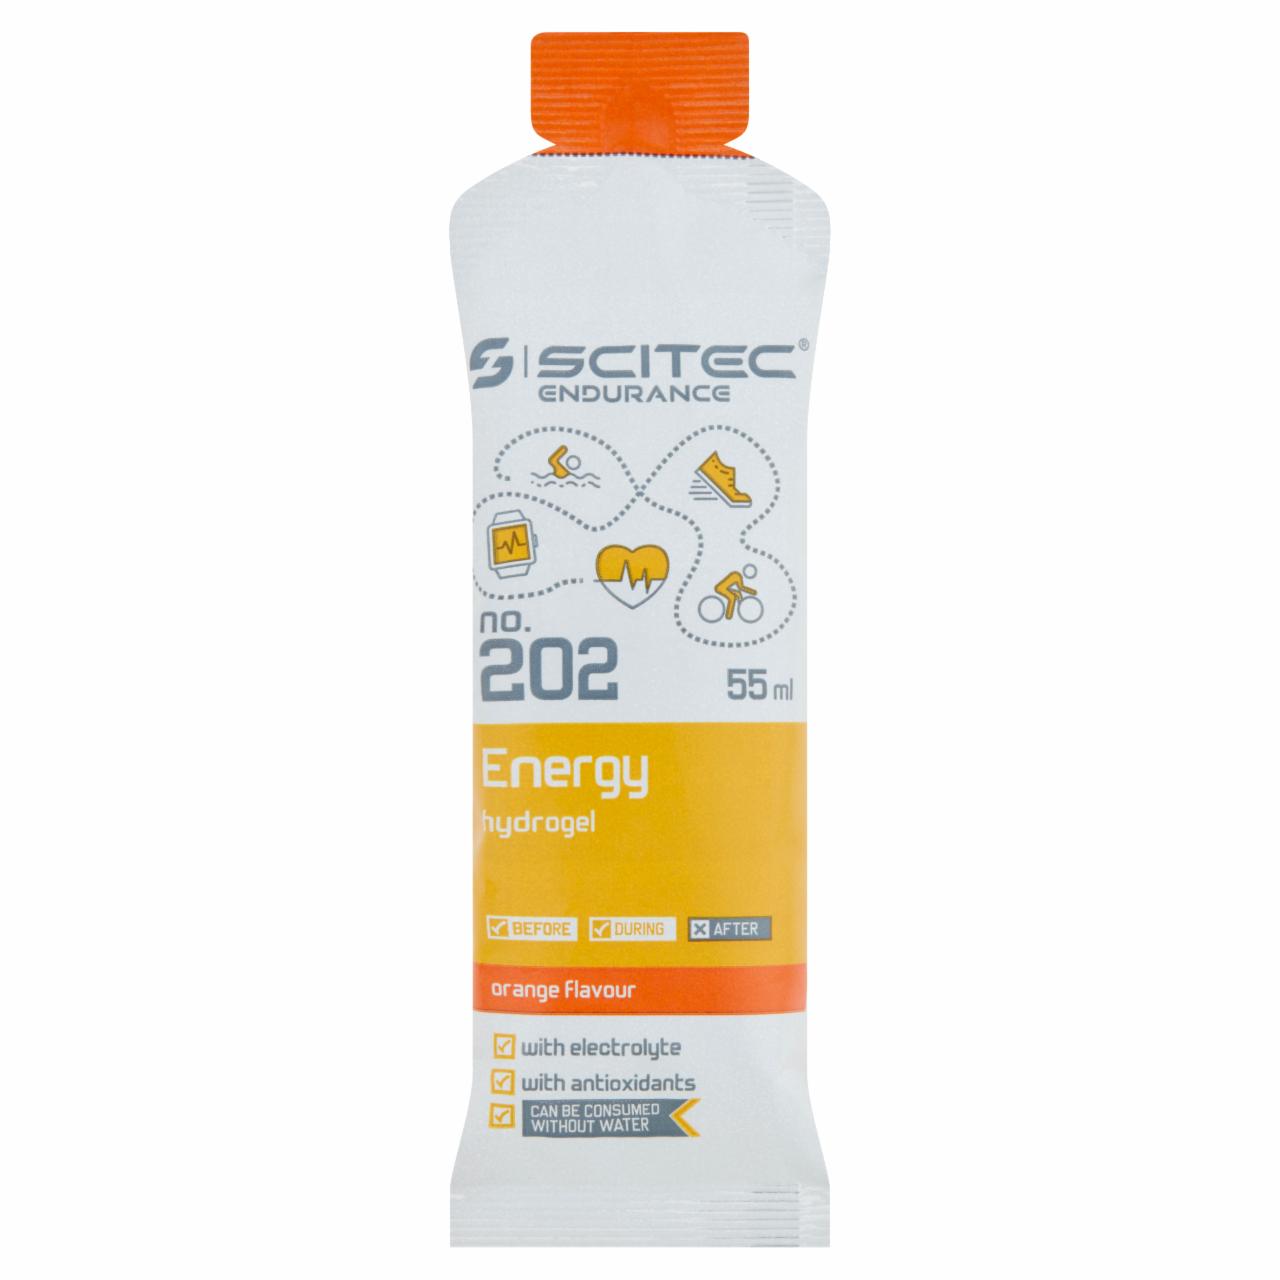 Képek - Scitec Endurance Energy Hydrogel narancs ízű, vitaminokat és ásványi anyagokat tartalmazó gél 55 ml